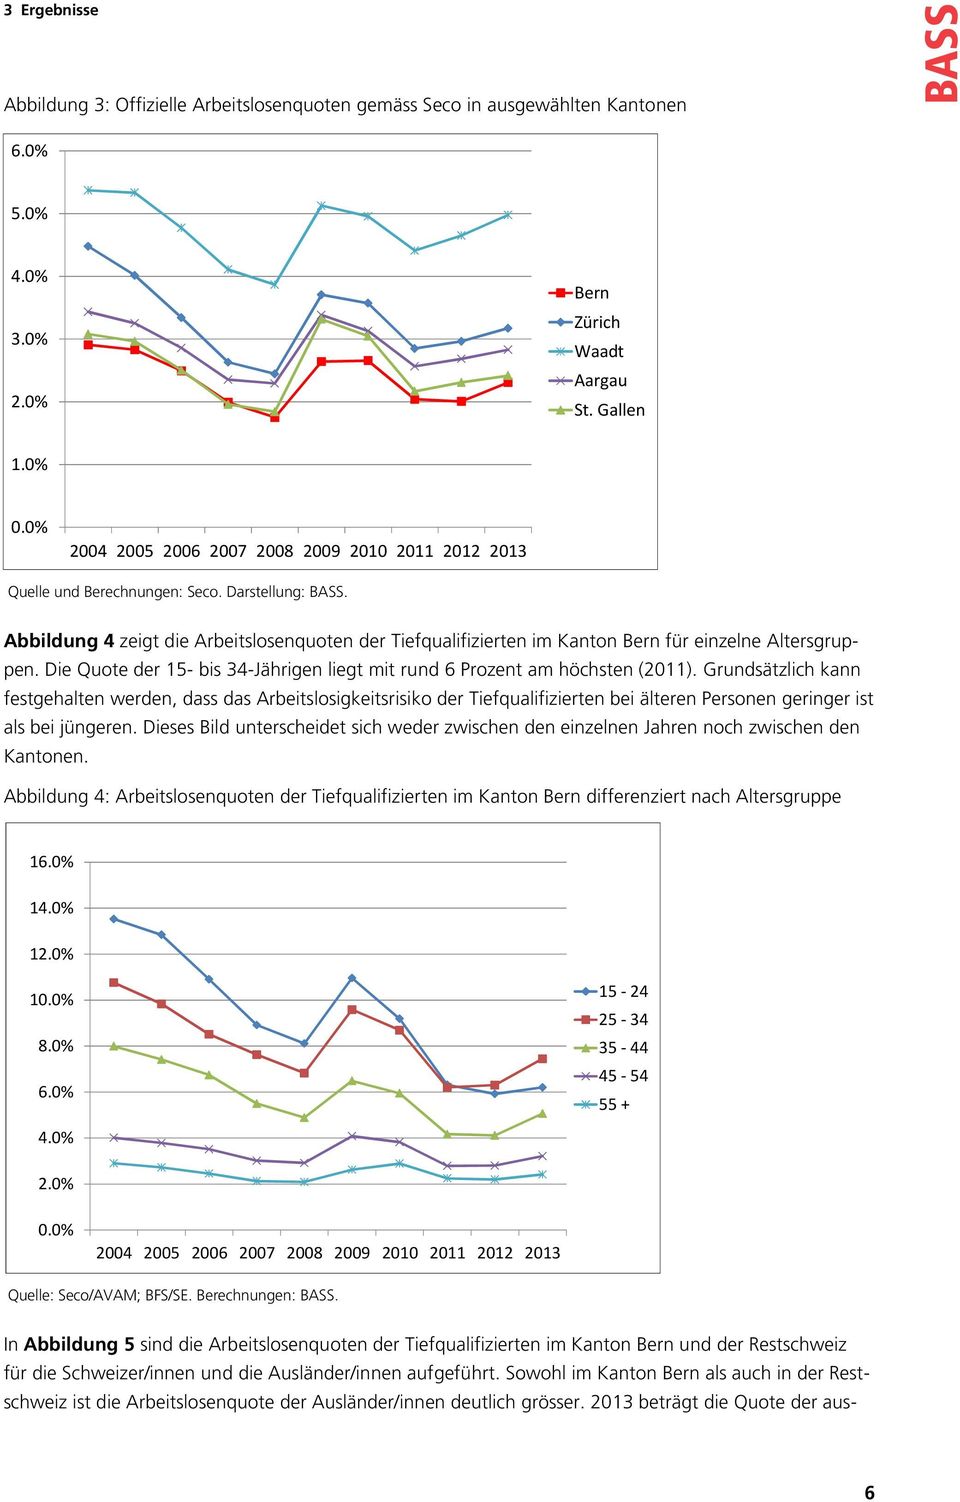 Abbildung 4 zeigt die Arbeitslosenquoten der Tiefqualifizierten im Kanton Bern für einzelne Altersgruppen. Die Quote der 15- bis 34-Jährigen liegt mit rund 6 Prozent am höchsten (2011).